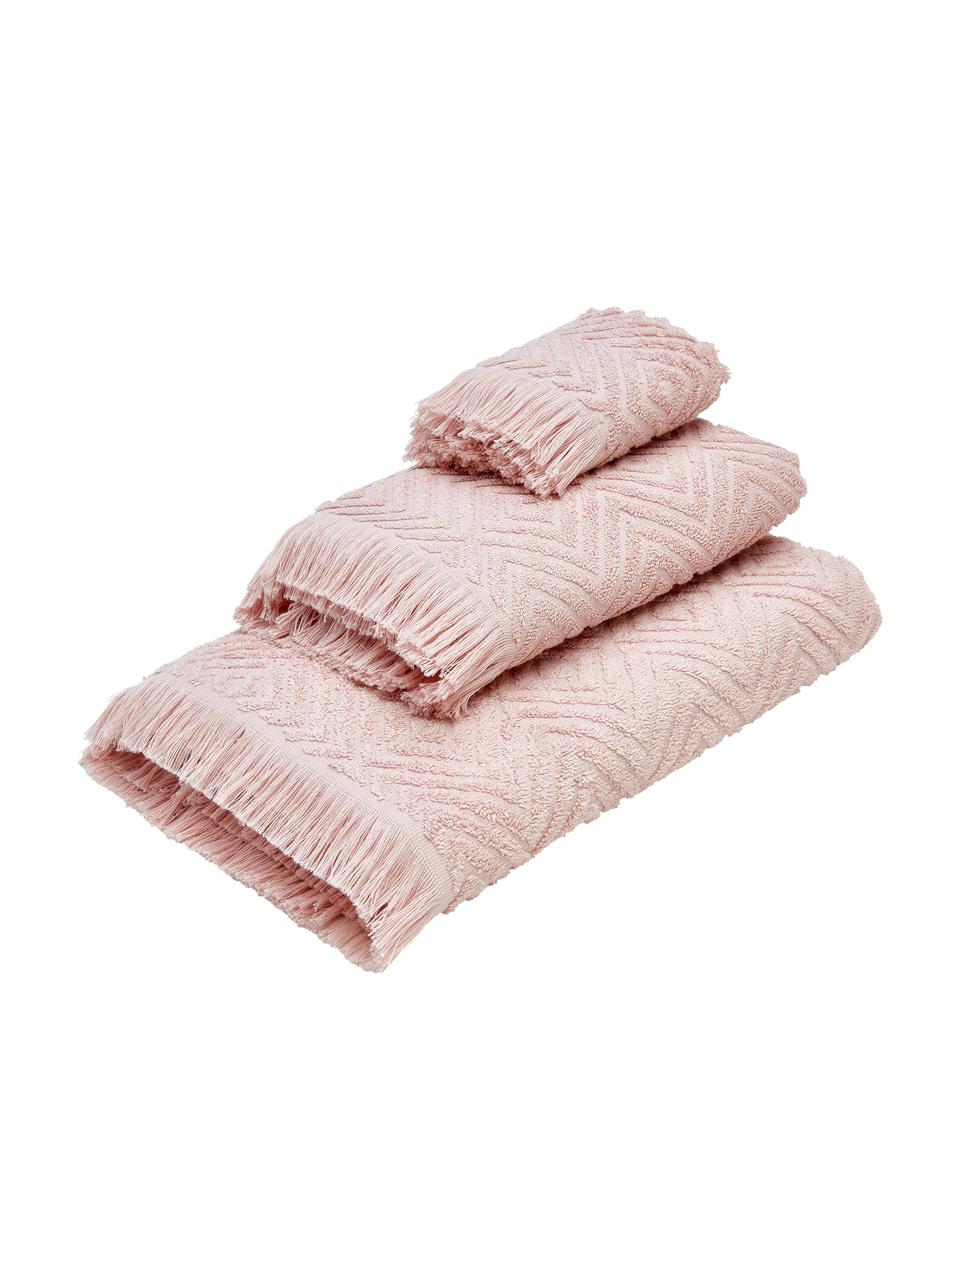 Komplet ręczników  Jacqui, 3 elem., Blady różowy, Komplet z różnymi rozmiarami